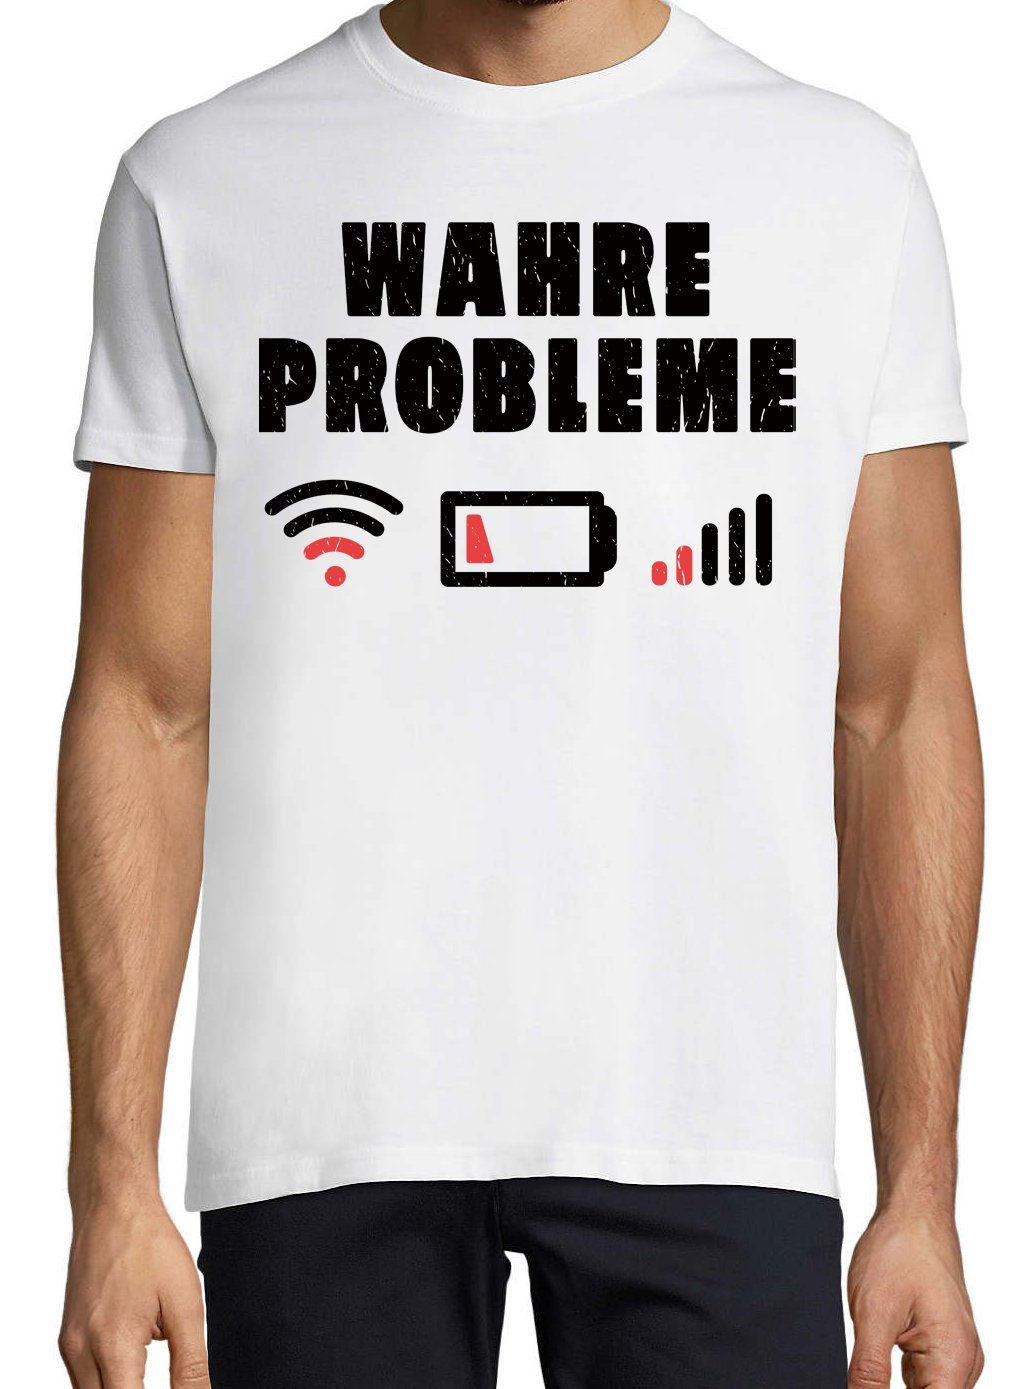 Print-Shirt Youth Designz lustigem "Wahre mit Weiss T-Shirt Probleme" Herren Spruch